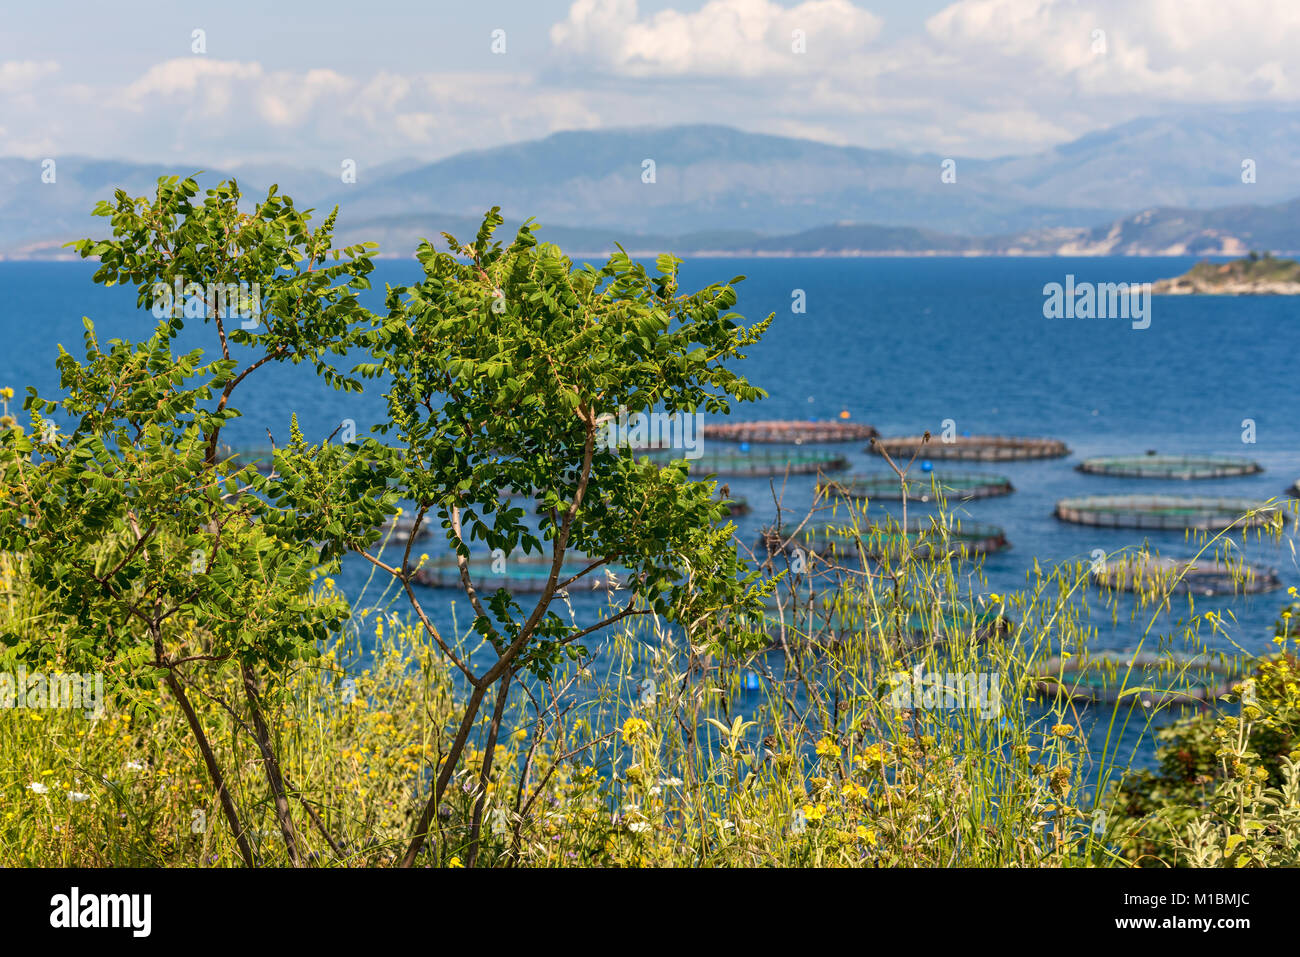 Grüne Pflanzen am Meer mit Blick auf die Angeln Bauernhof am blauen Meer. Korfu, Griechenland. Stockfoto